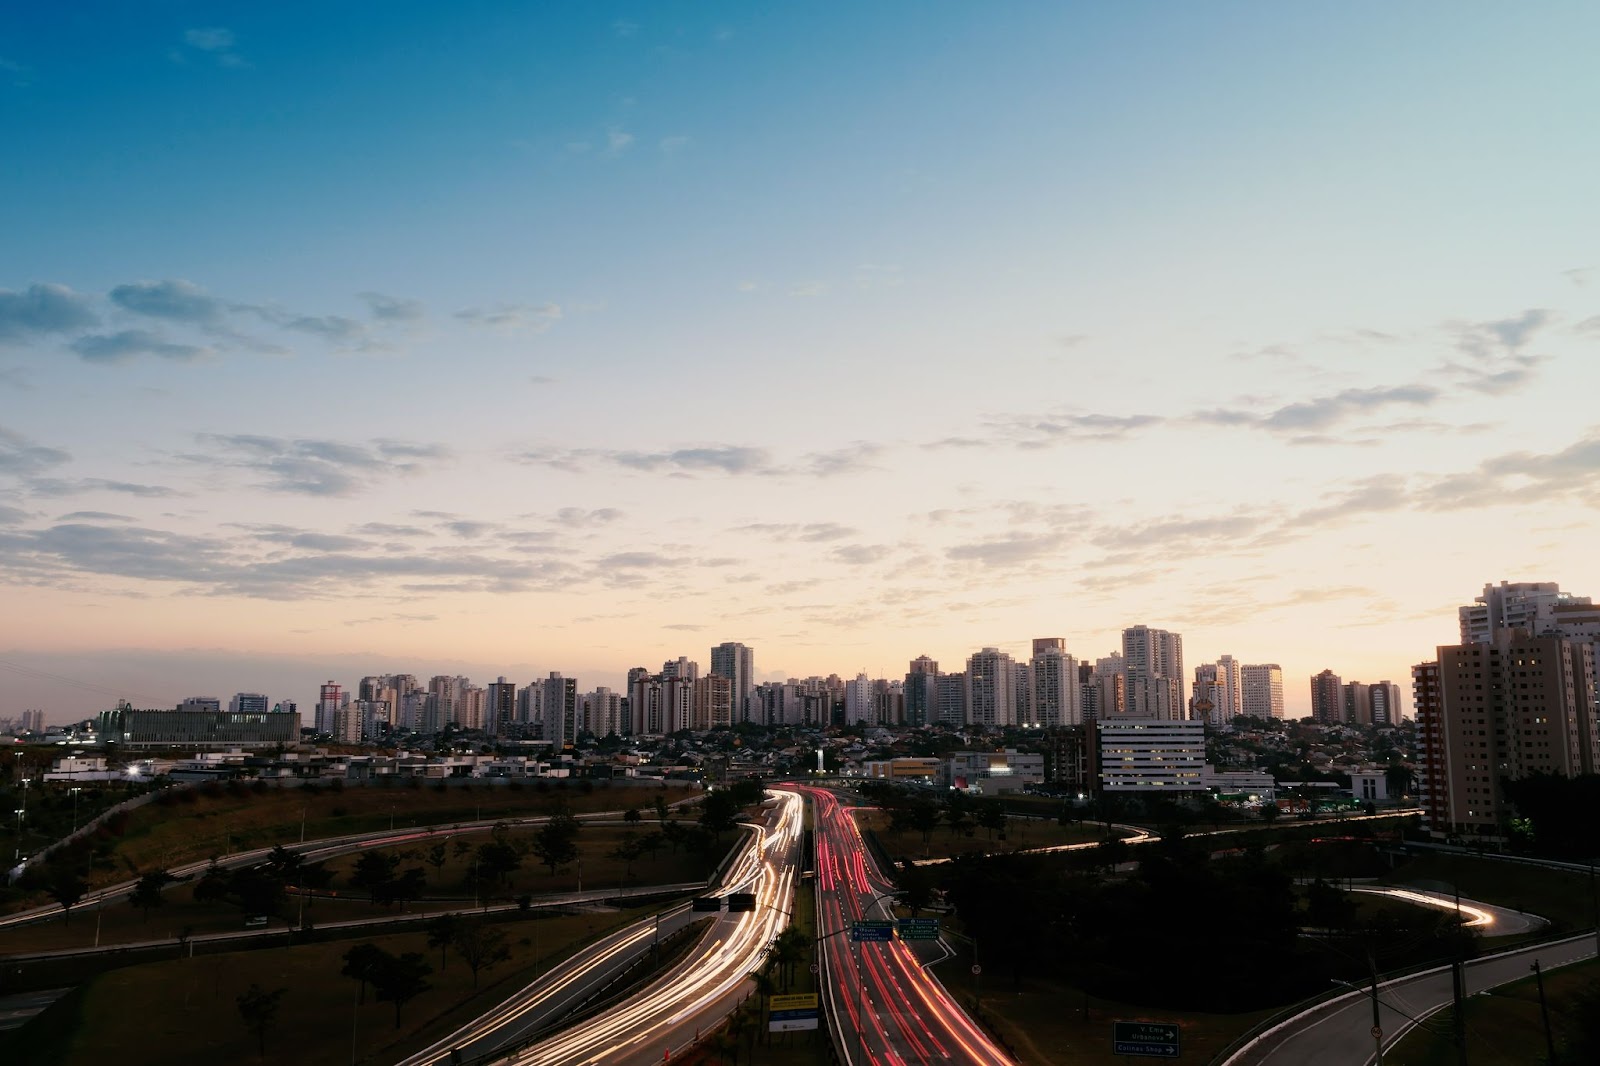 Vista panorâmica da cidade de São José dos Campos. Rodovia dividida pelo fluxo de ida e vinda, com as luzes dos veículos formando um borrão. Céu azul com poucas nuvens.